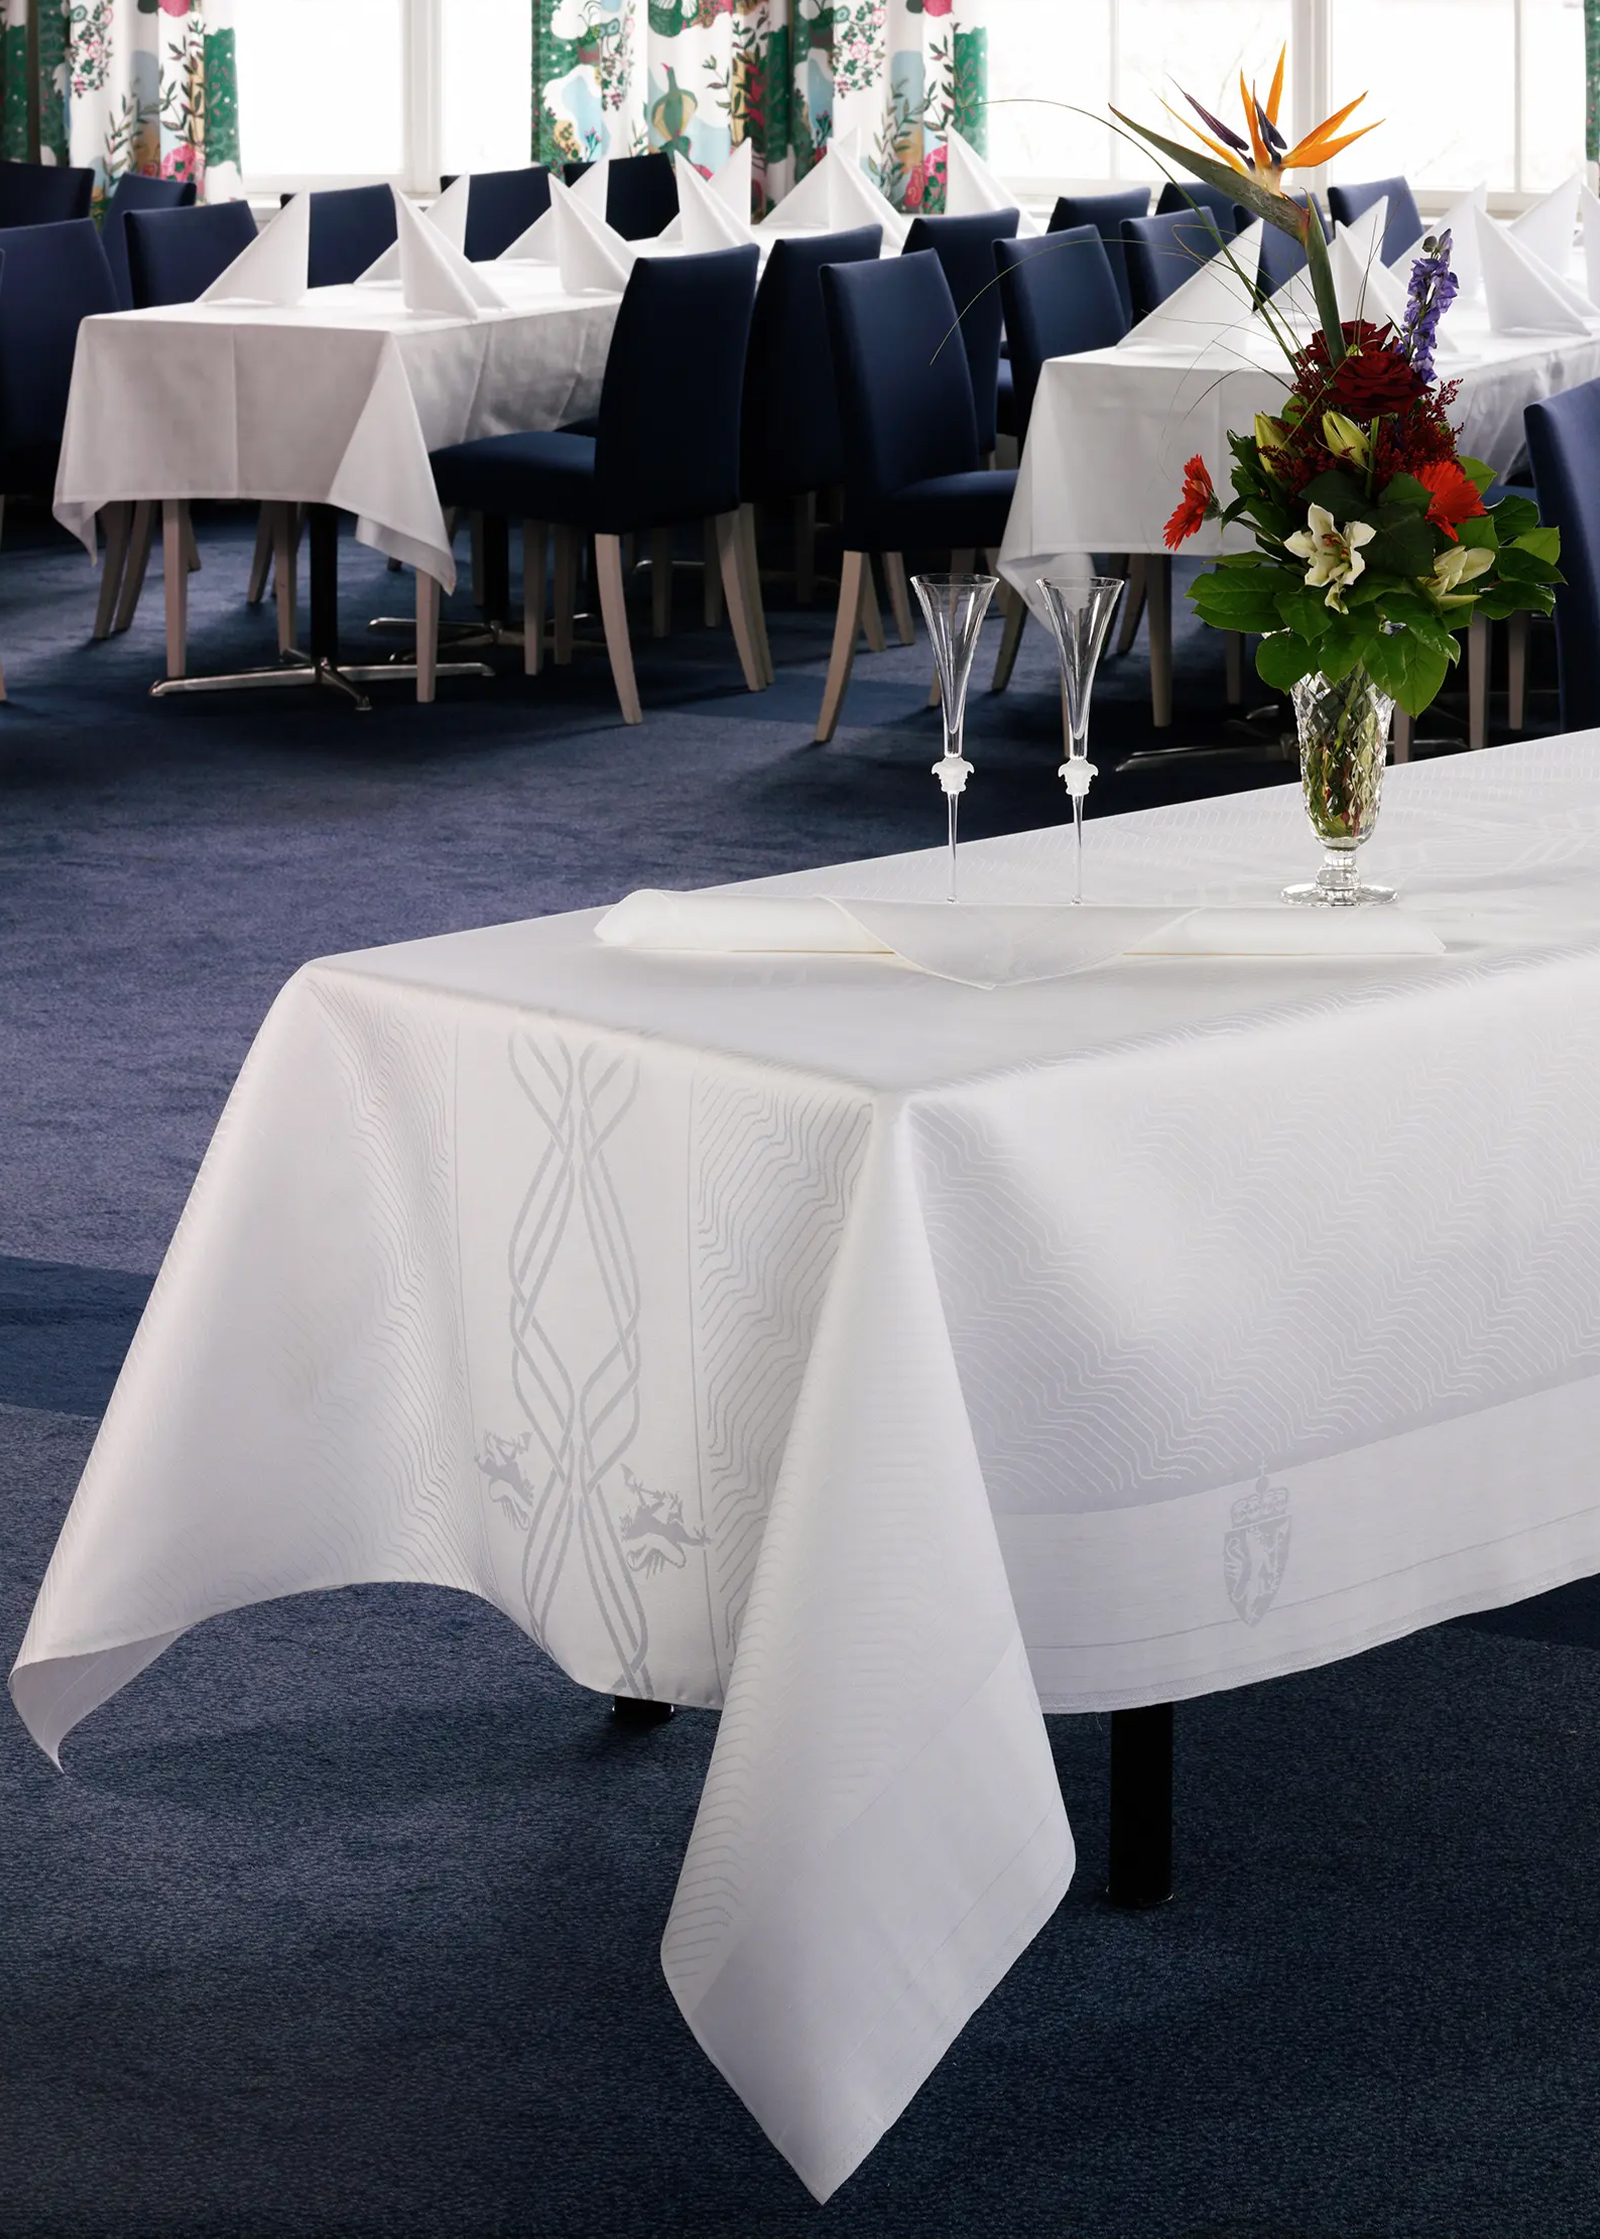 The Norwegian Embassy - tablecloths made by Klässbols Linneväveri